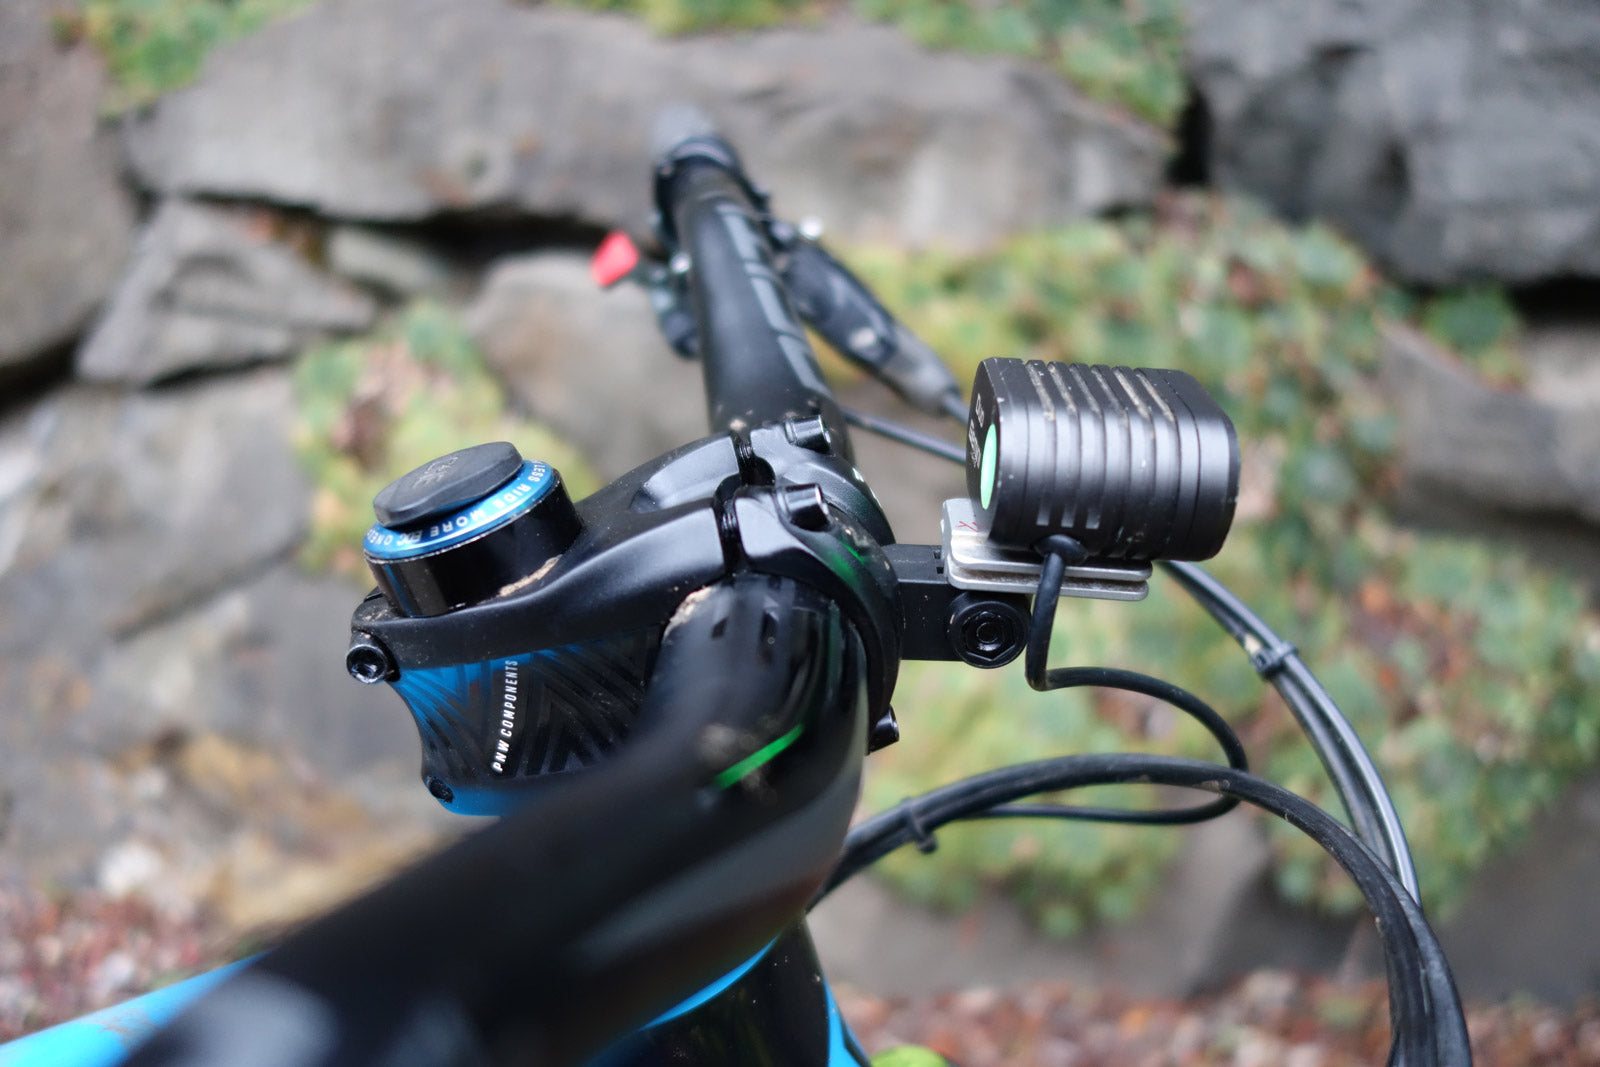 Gemino Duo bike light mounted to a PNW Range stem with GoPro mount